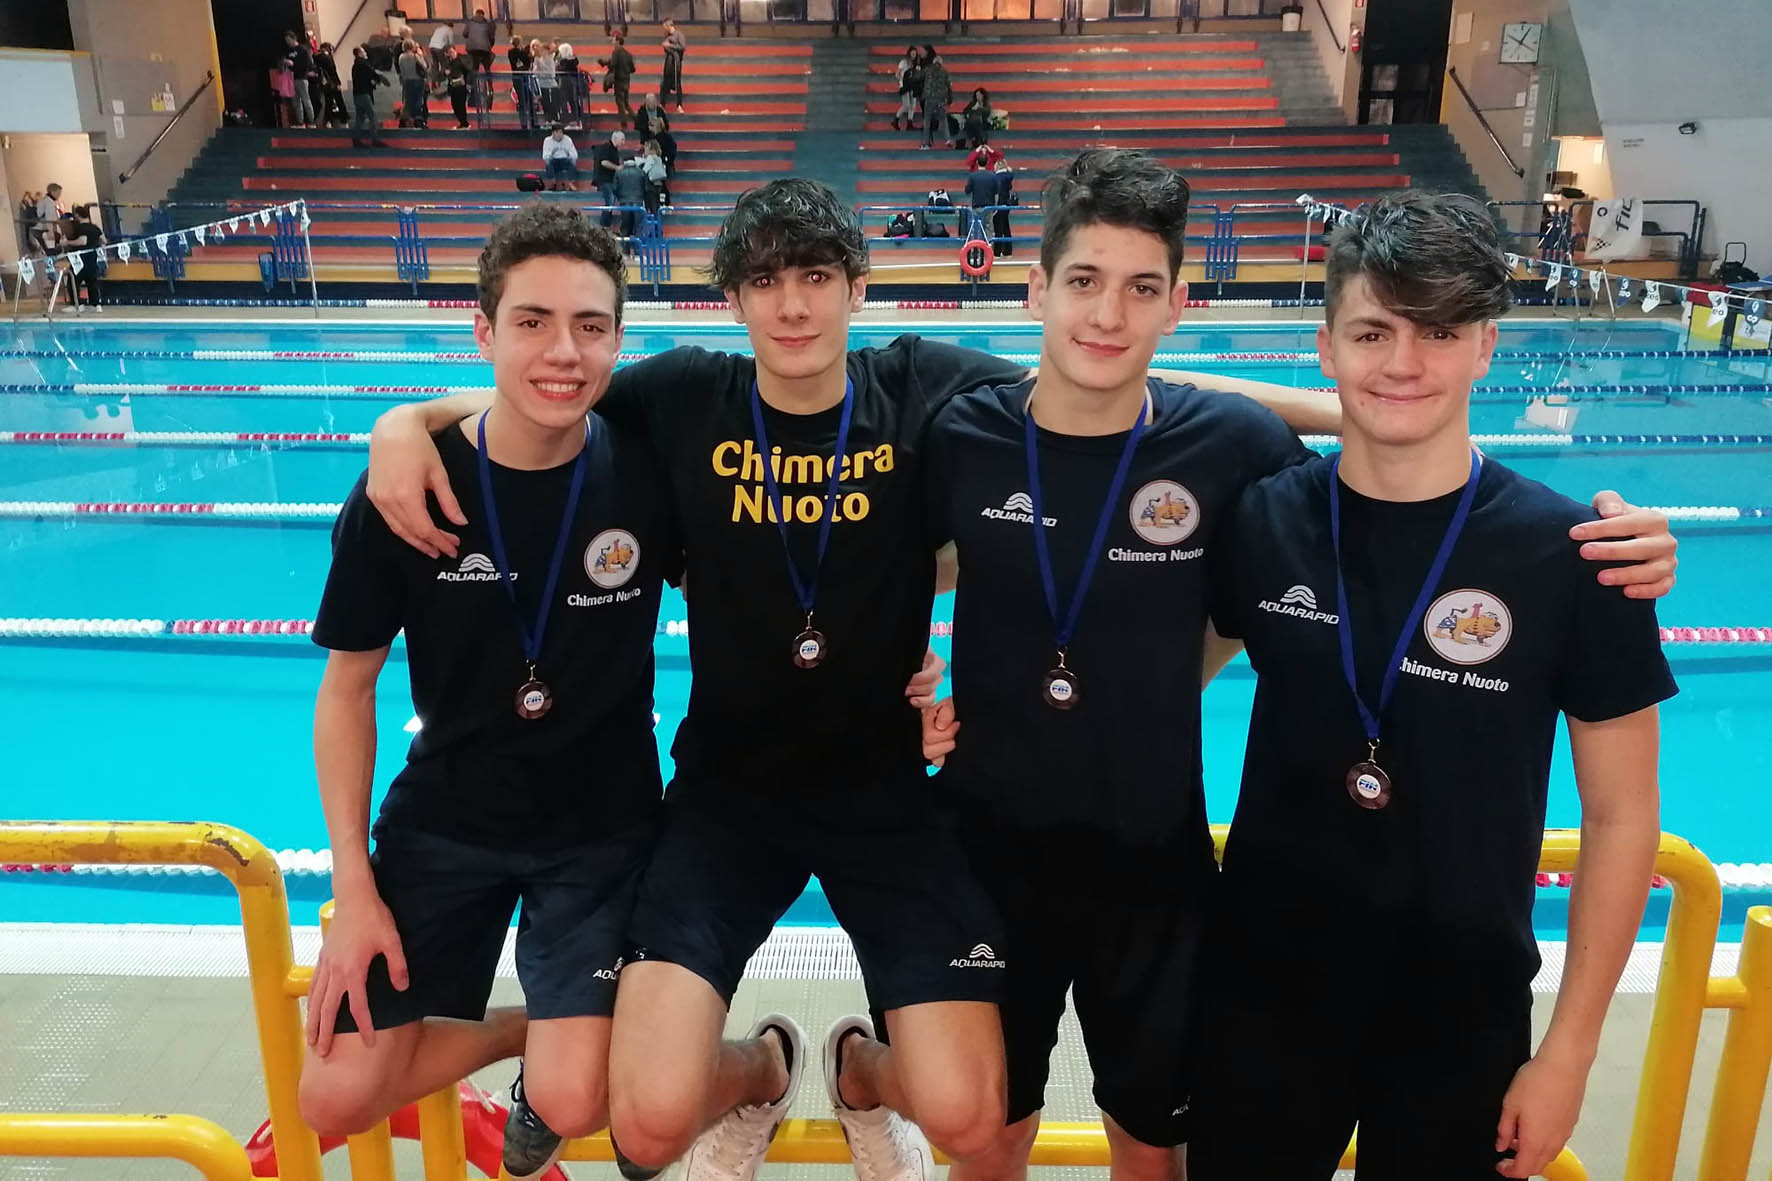 Sedici medaglie per la Chimera Nuoto in Coppa Toscana Sprint